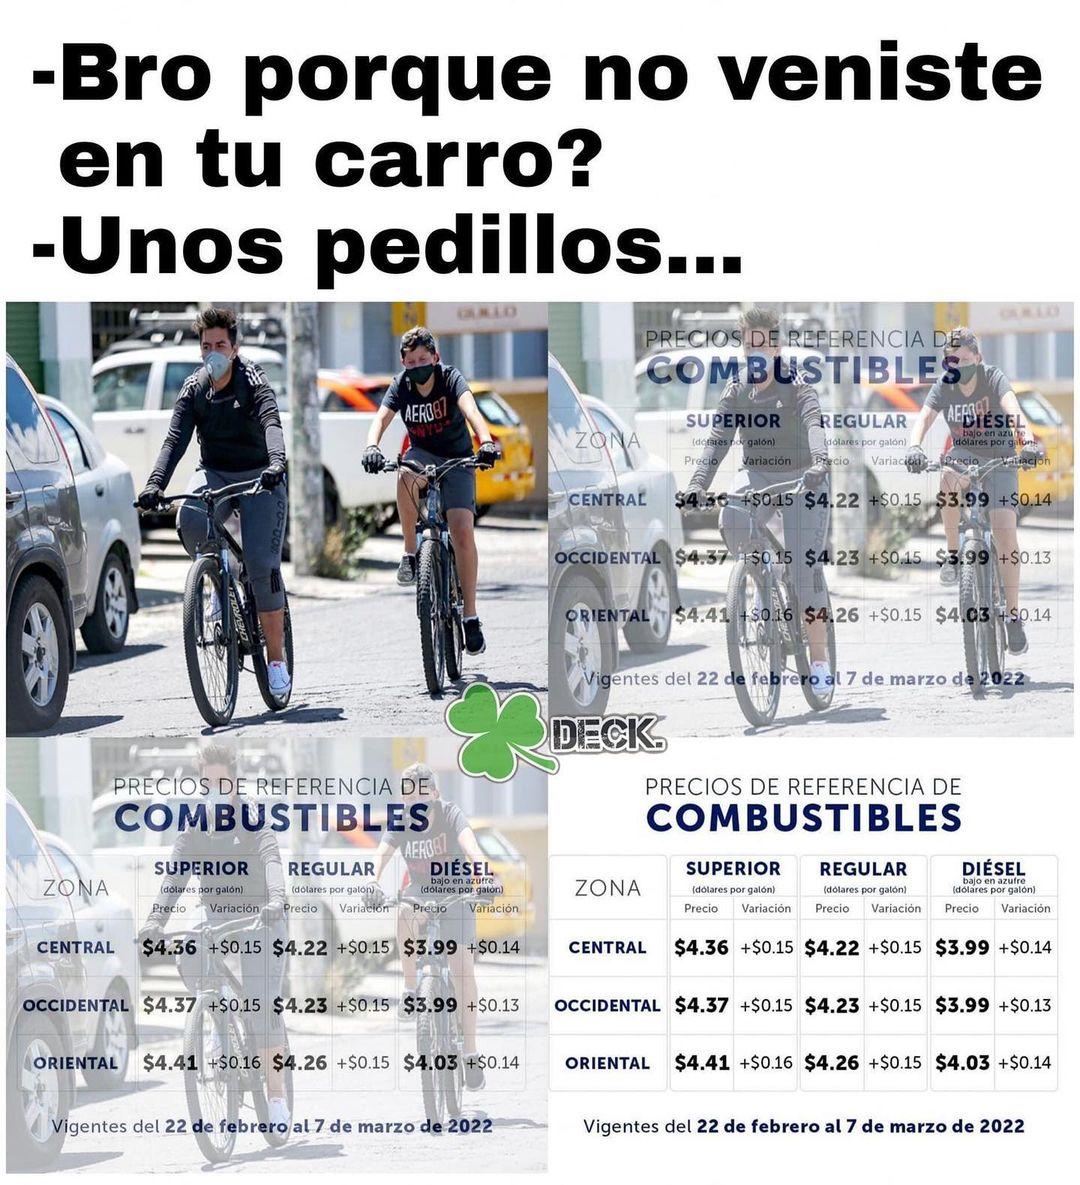 Mejor voy en bici 

#vacilsalvadoreno #sivar #elsalvador #soloenelsalvador